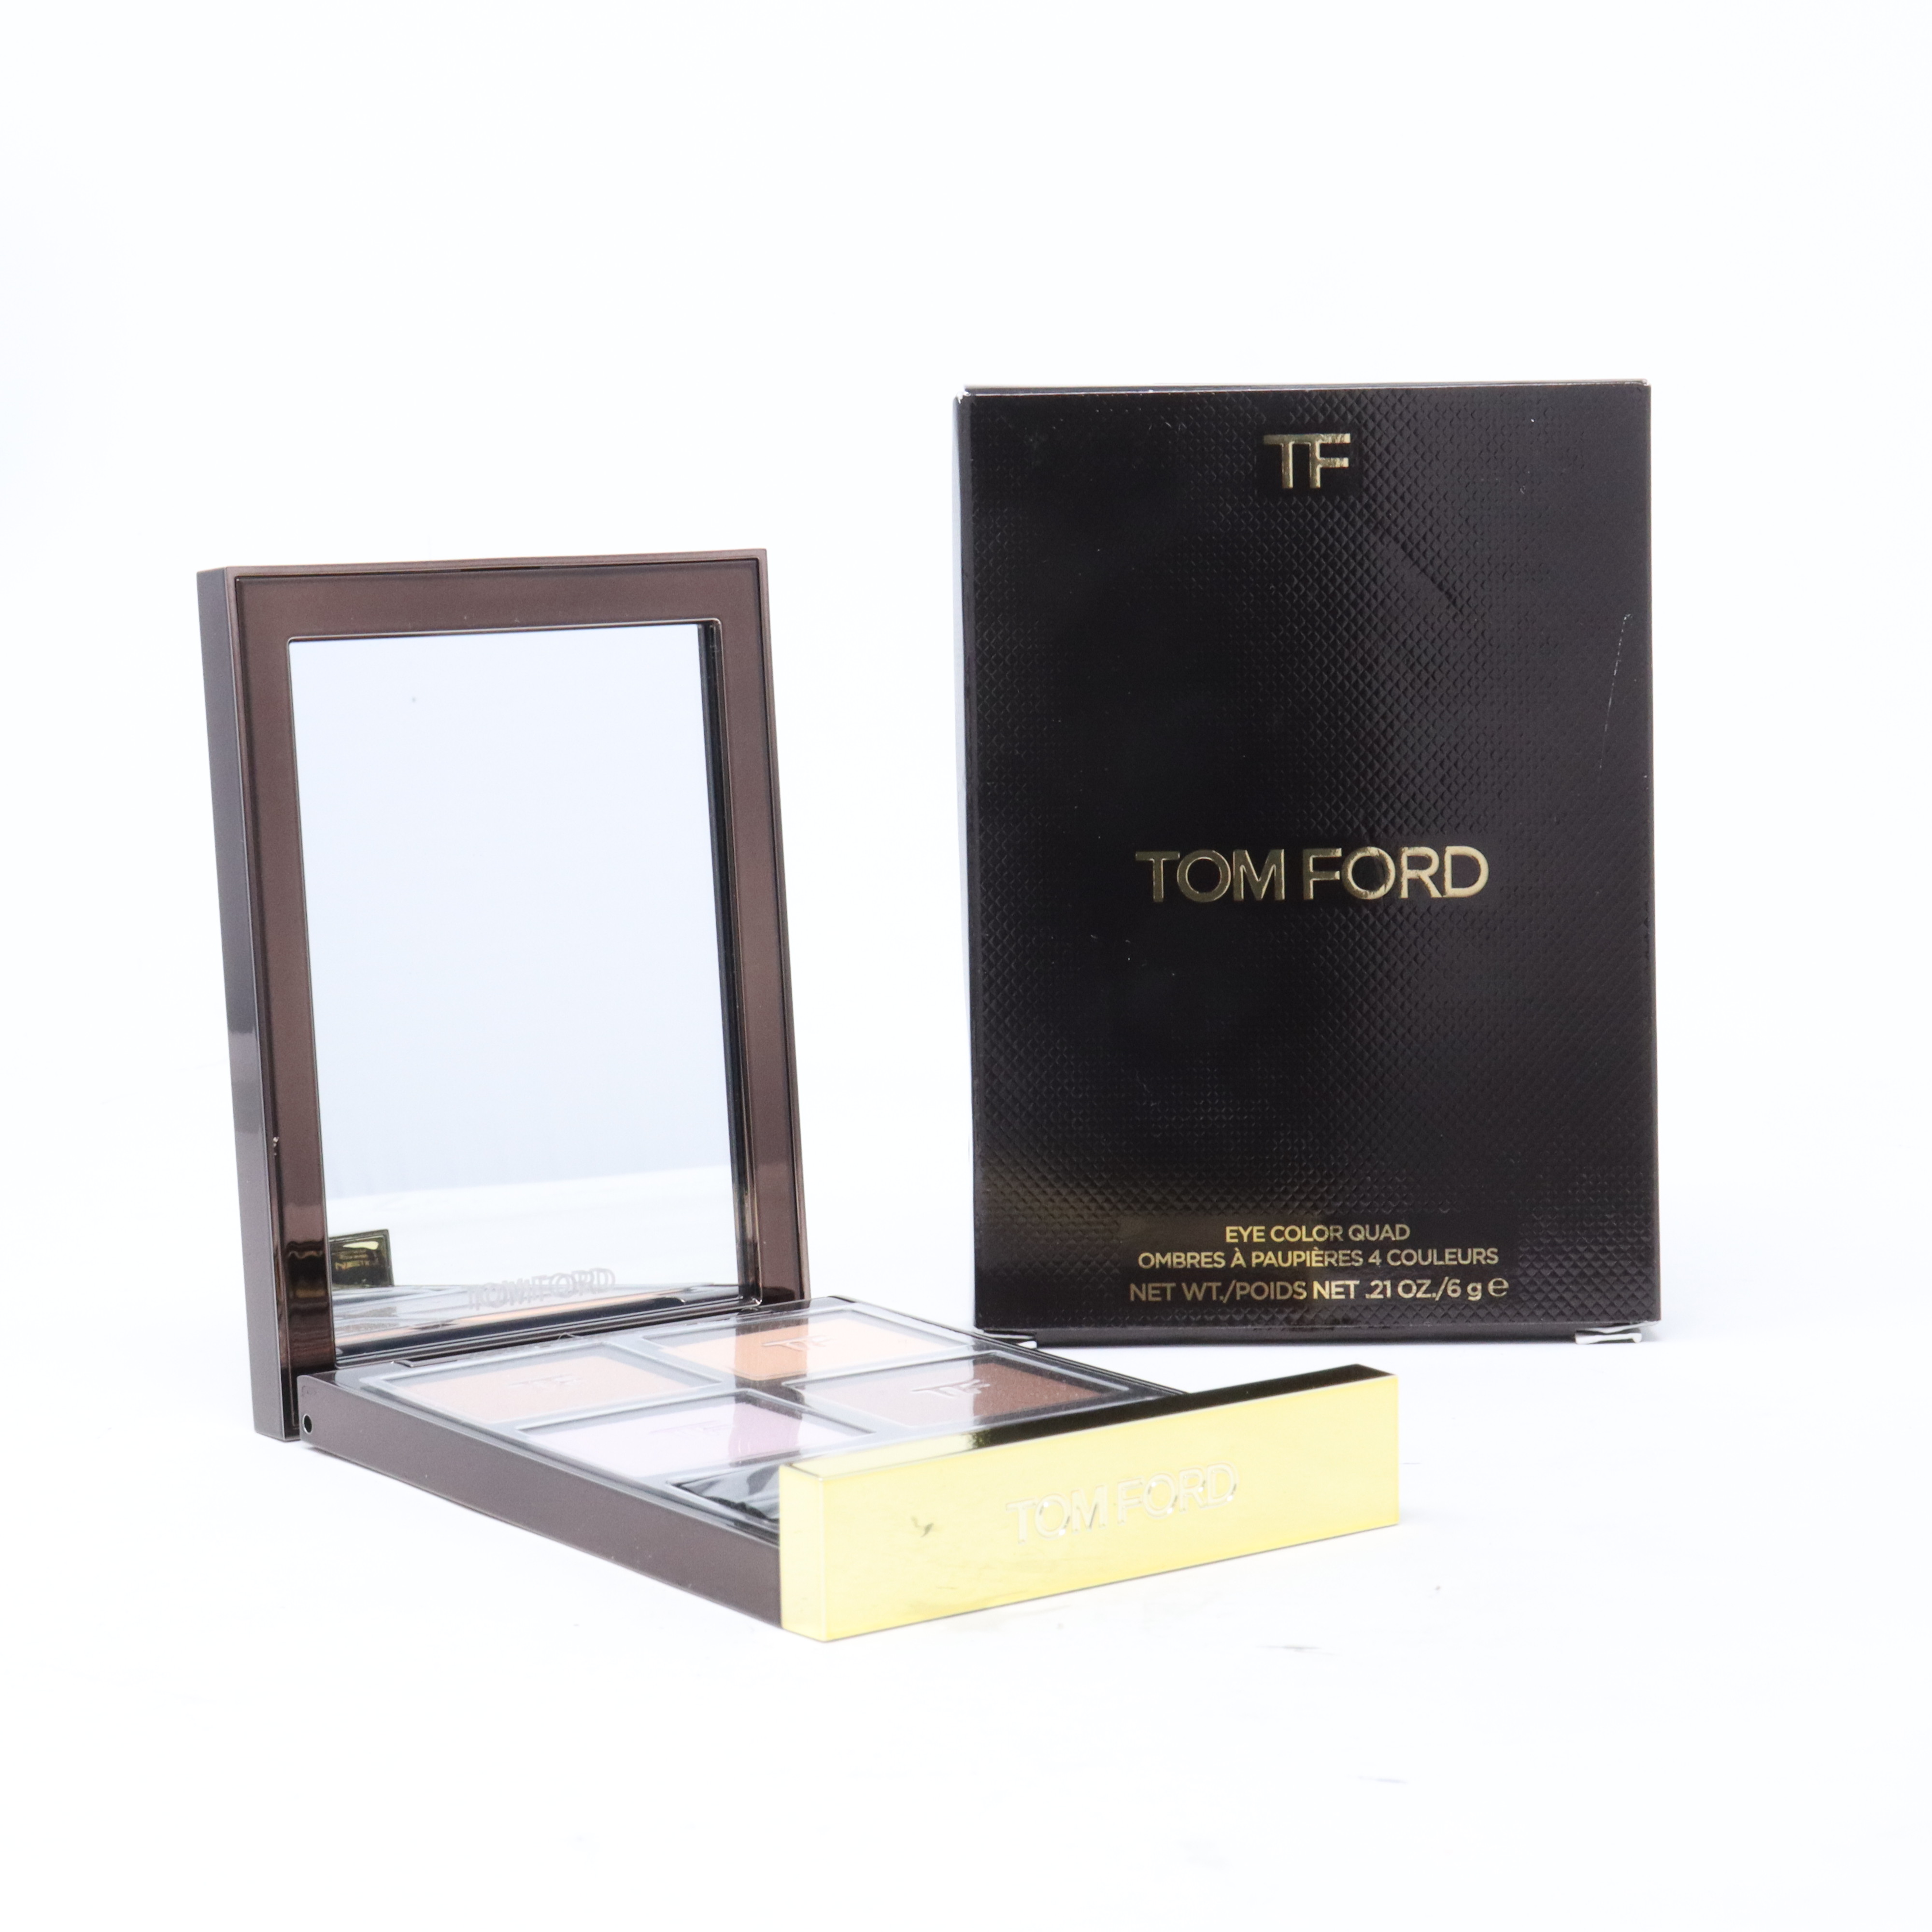 TOM FORD Eye Color Quad Eyeshadow Palette 33 Rose Prisme for sale online |  eBay